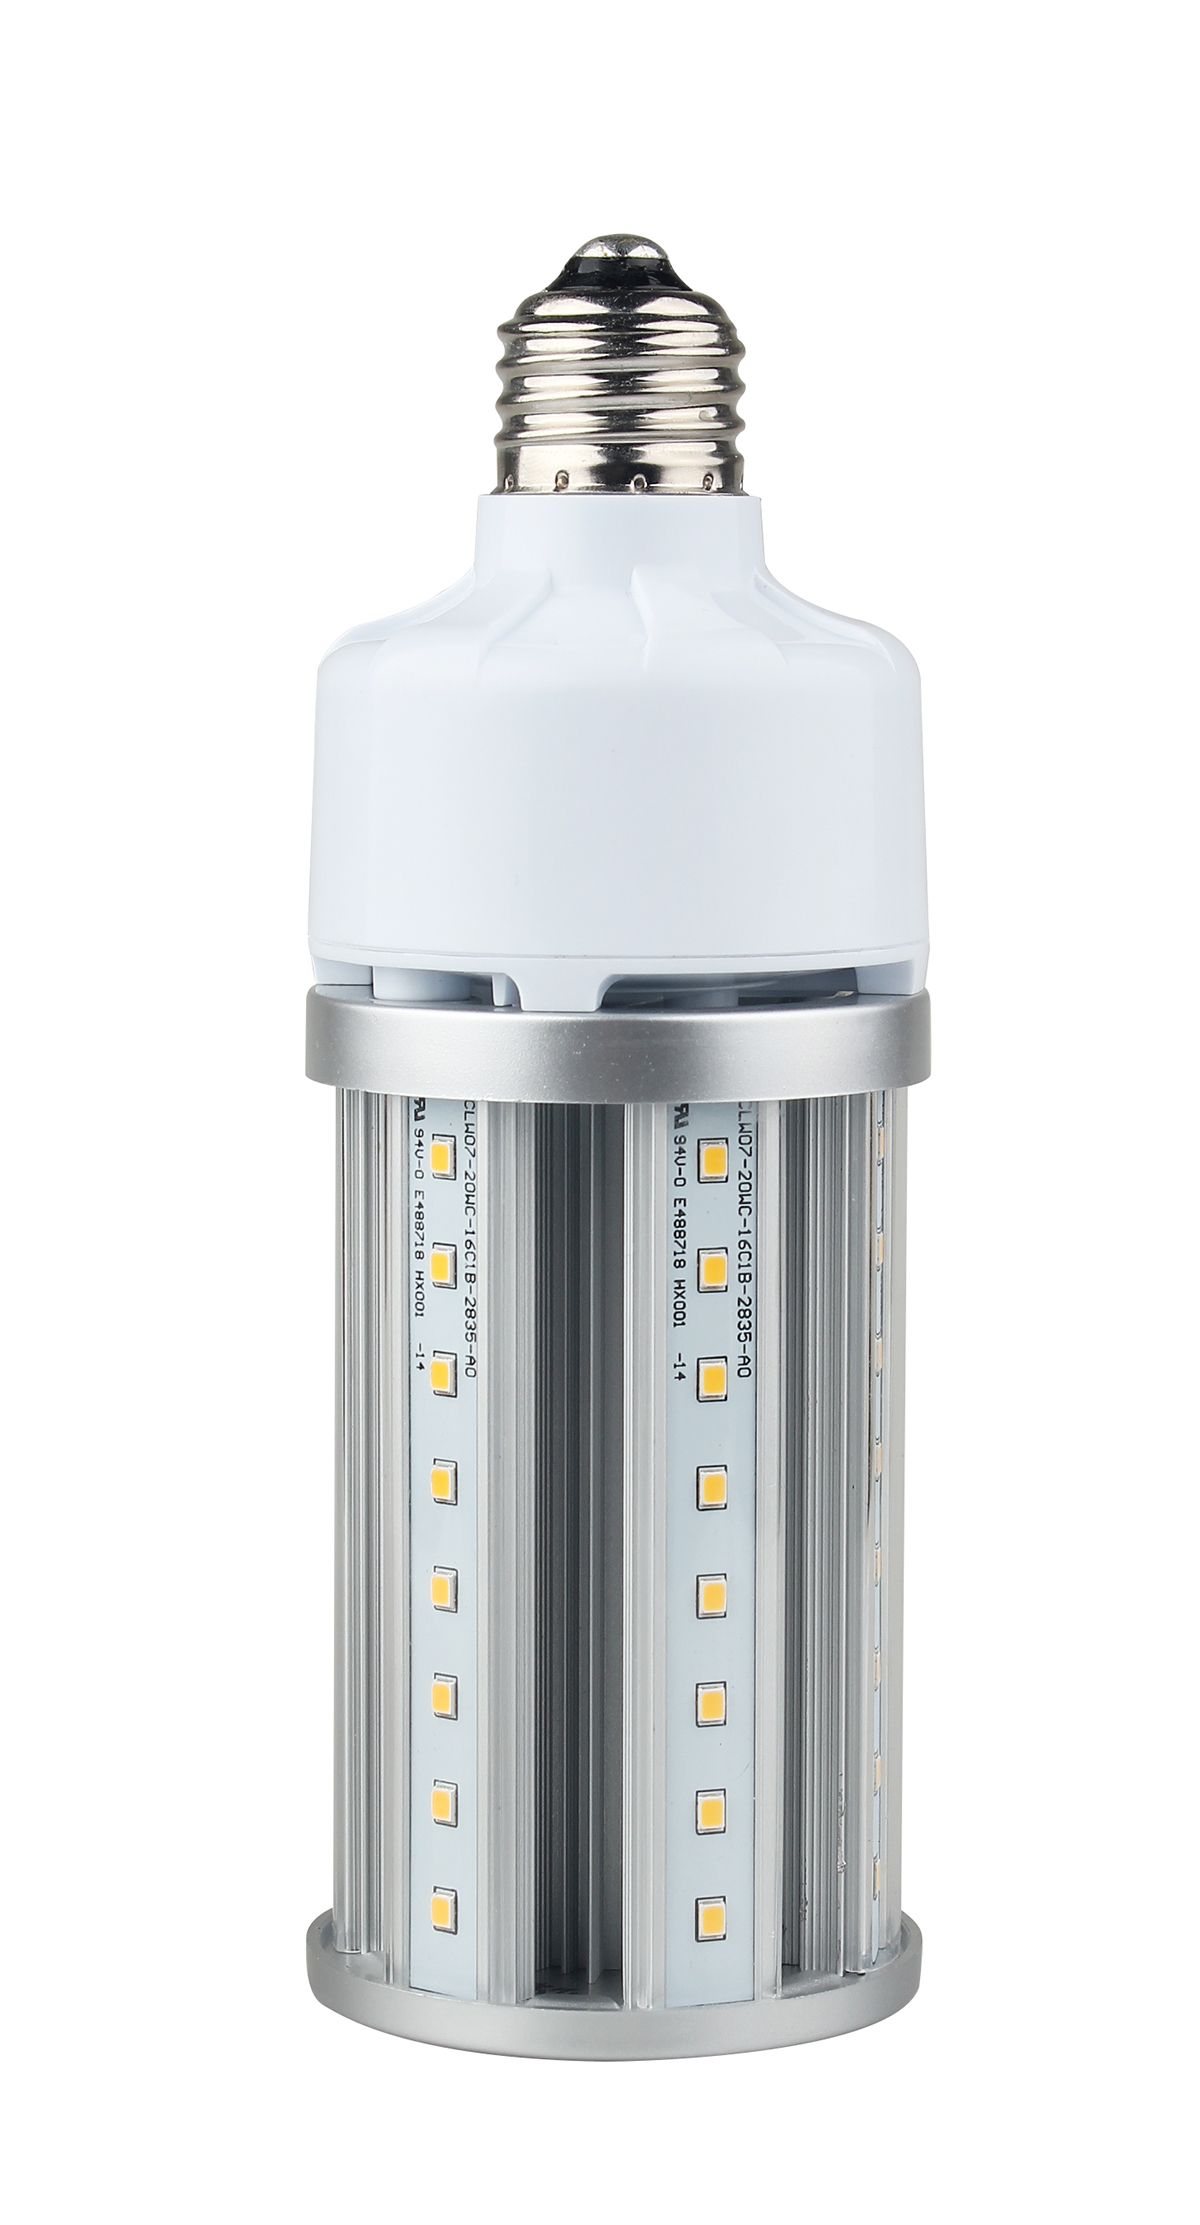 RS PRO LED Clusterlampe 19 W / 230V, E27 Sockel, 6500K